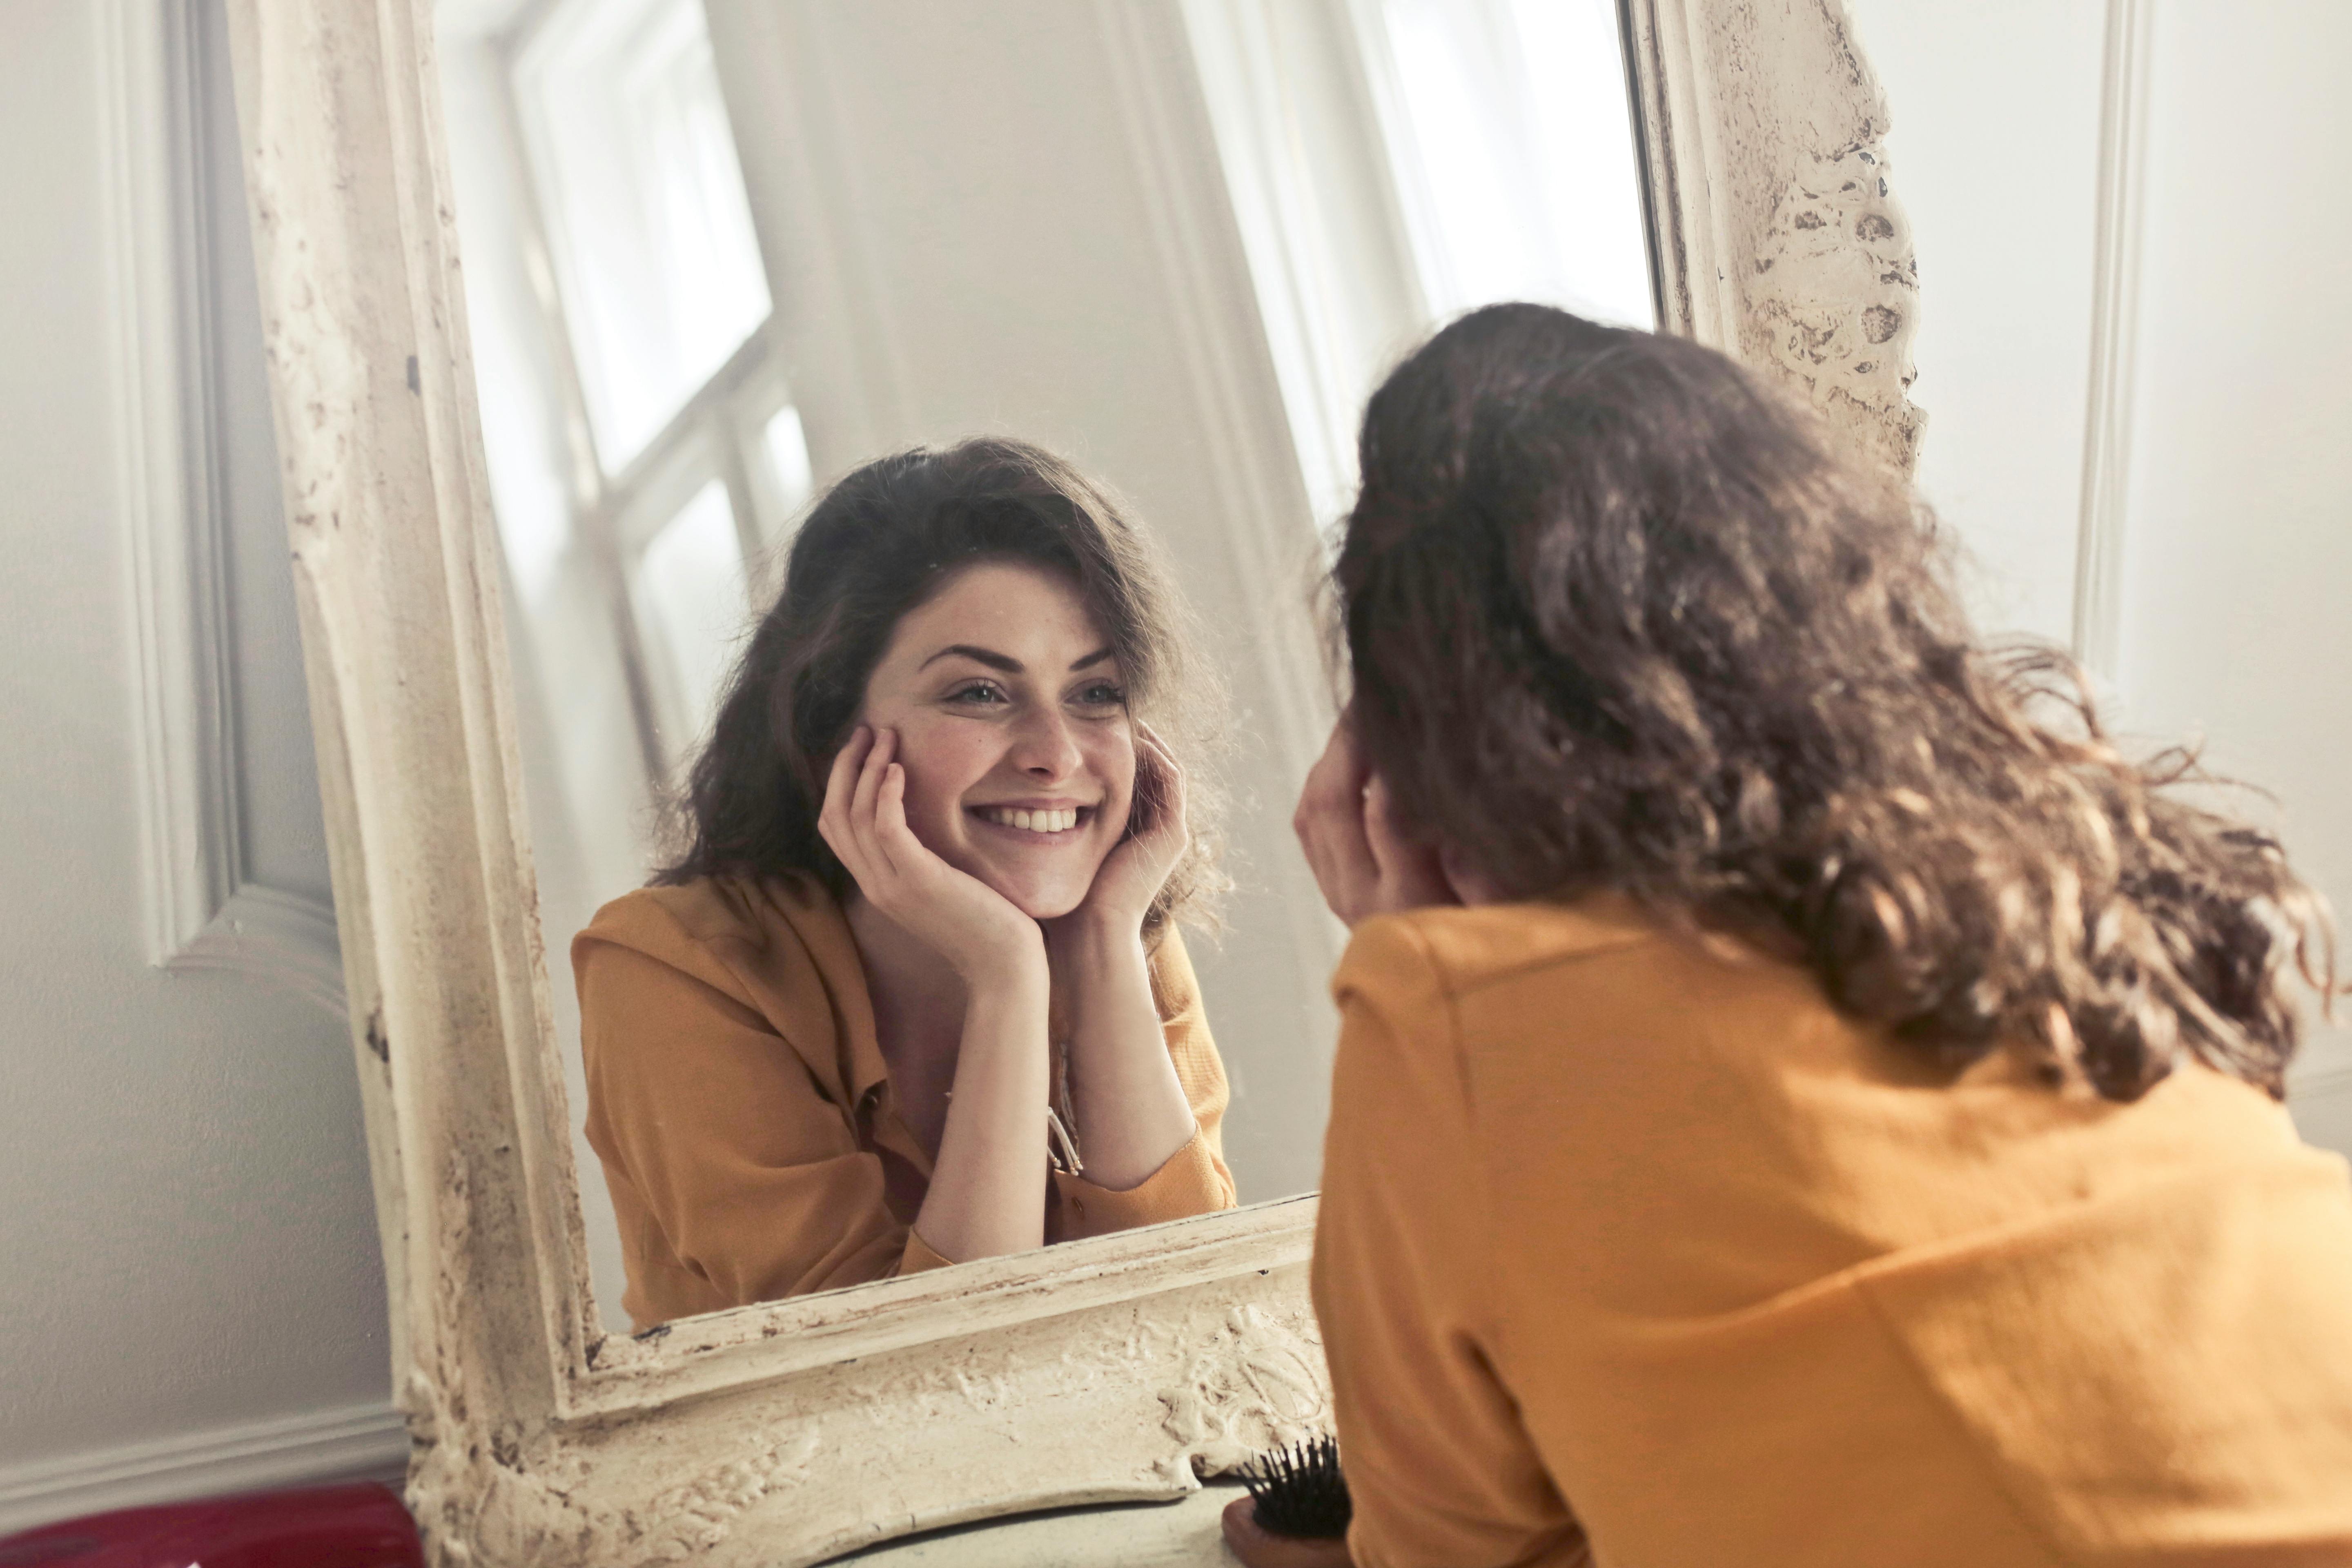 Una mujer feliz sonriendo a su reflejo en un espejo | Fuente: Pexels